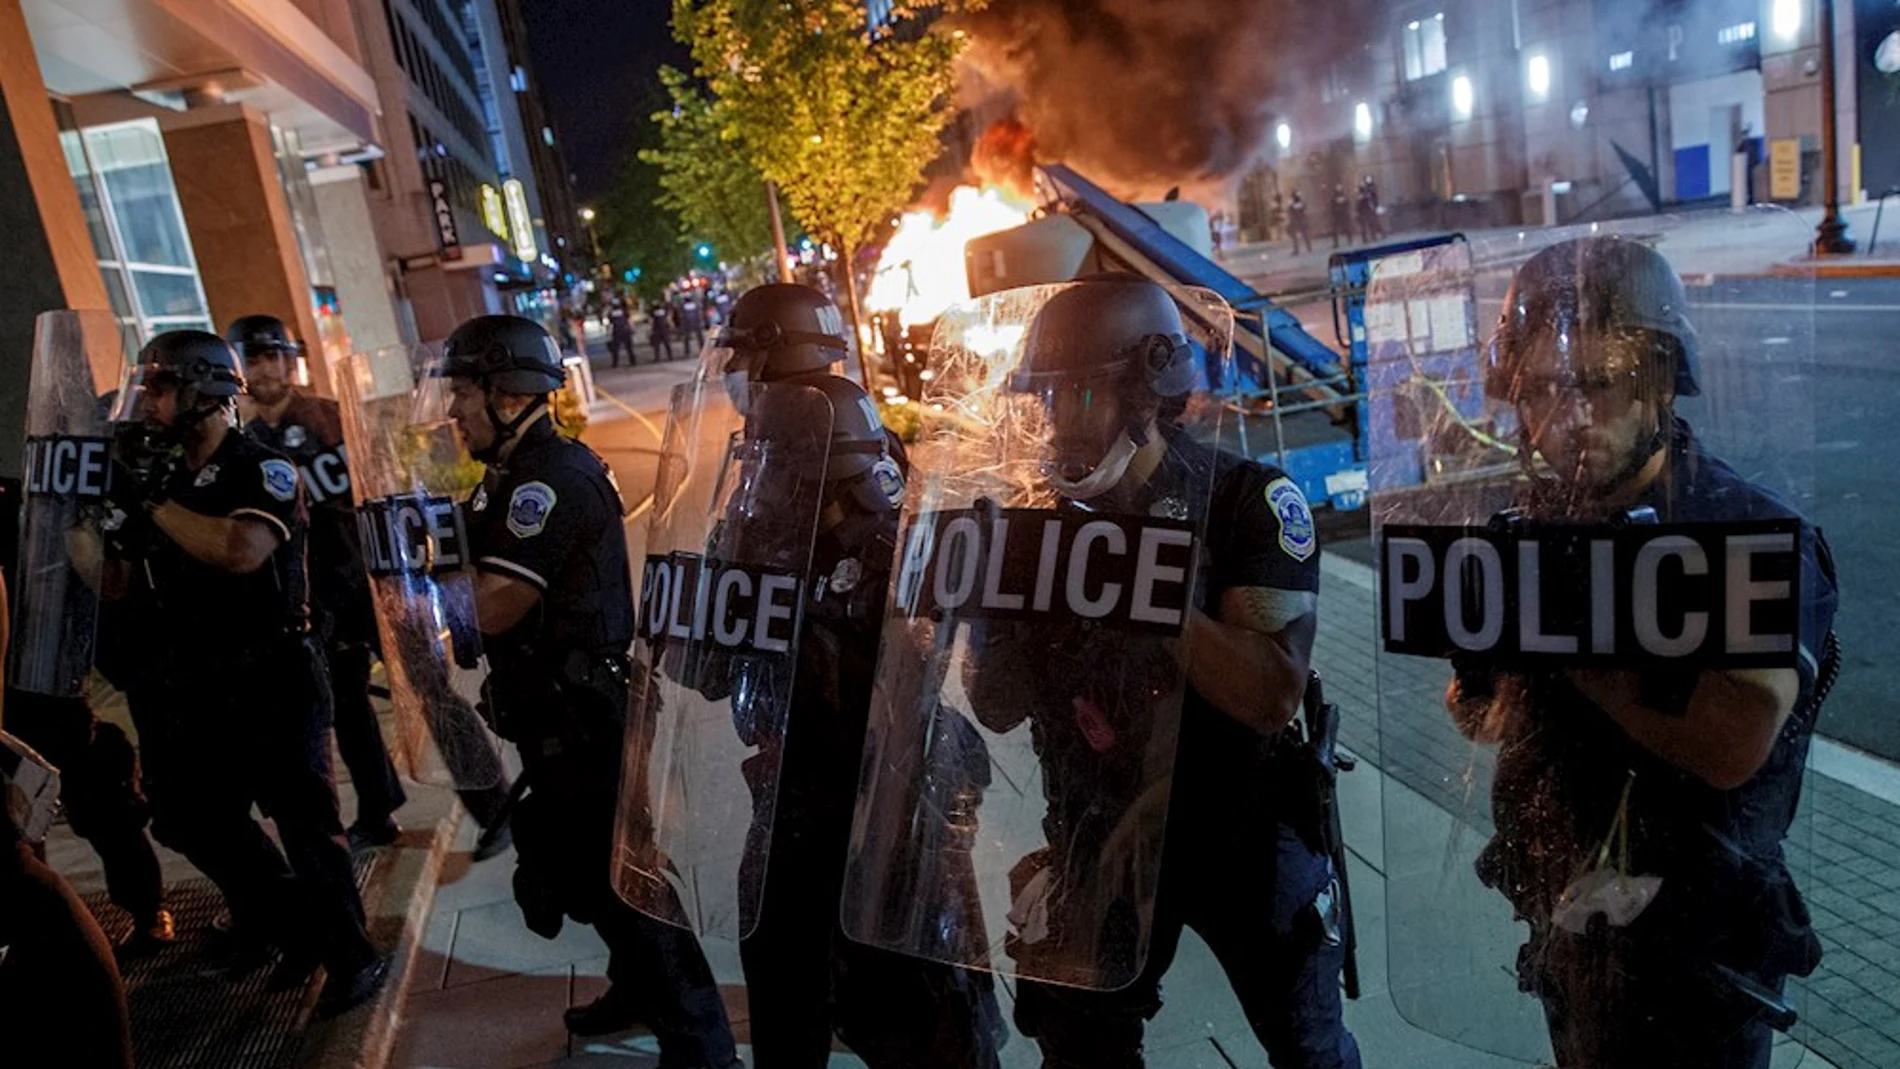 Enfrentamiento entre la policía y manifestantes durante una protesta contra el racismo (Archivo)